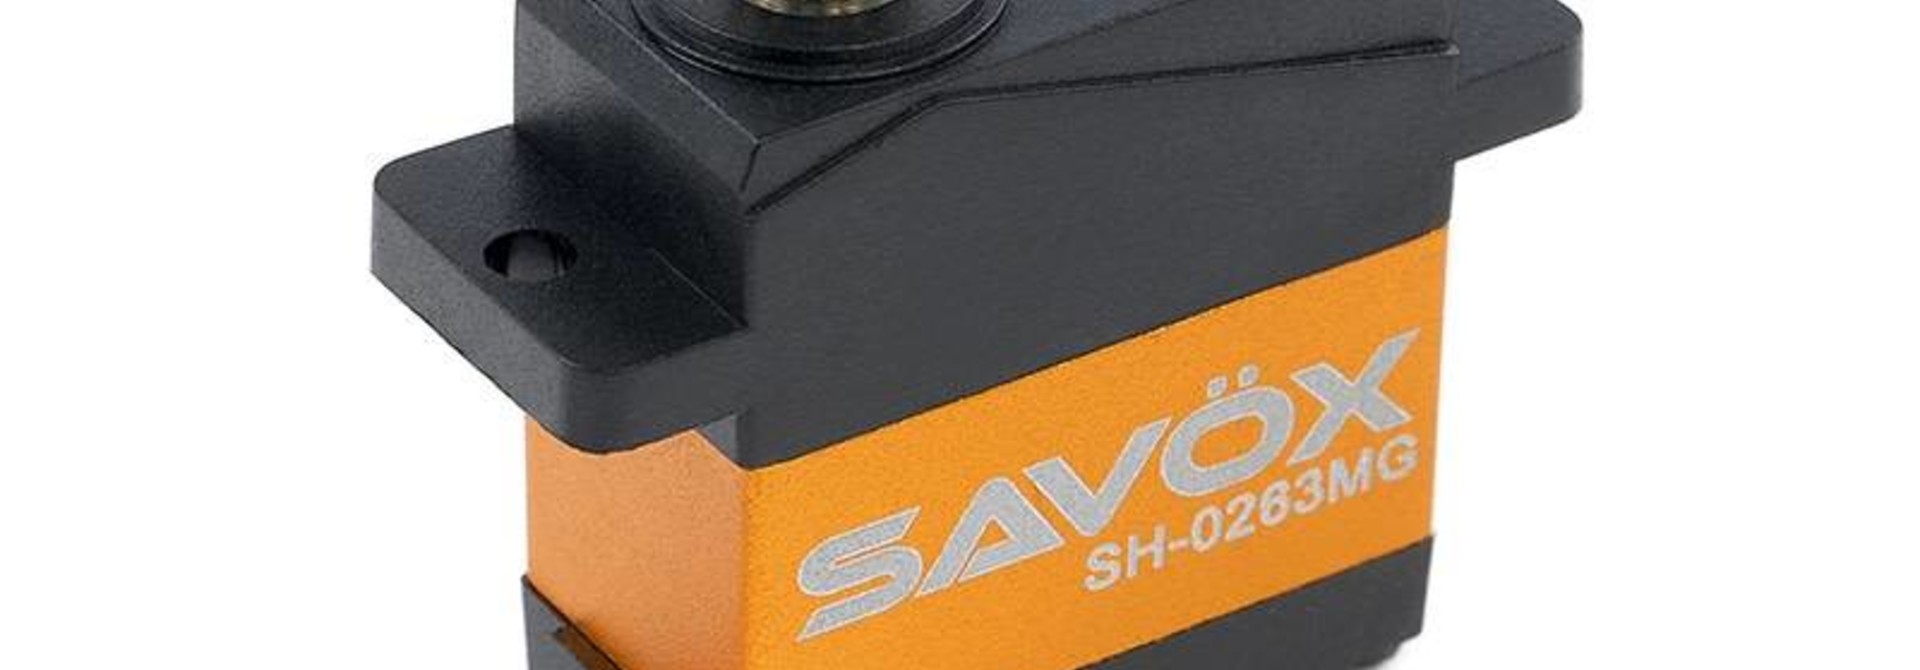 Savox - Servo - SH-0263MG - Digital - DC Motor - Metaal tandwielen